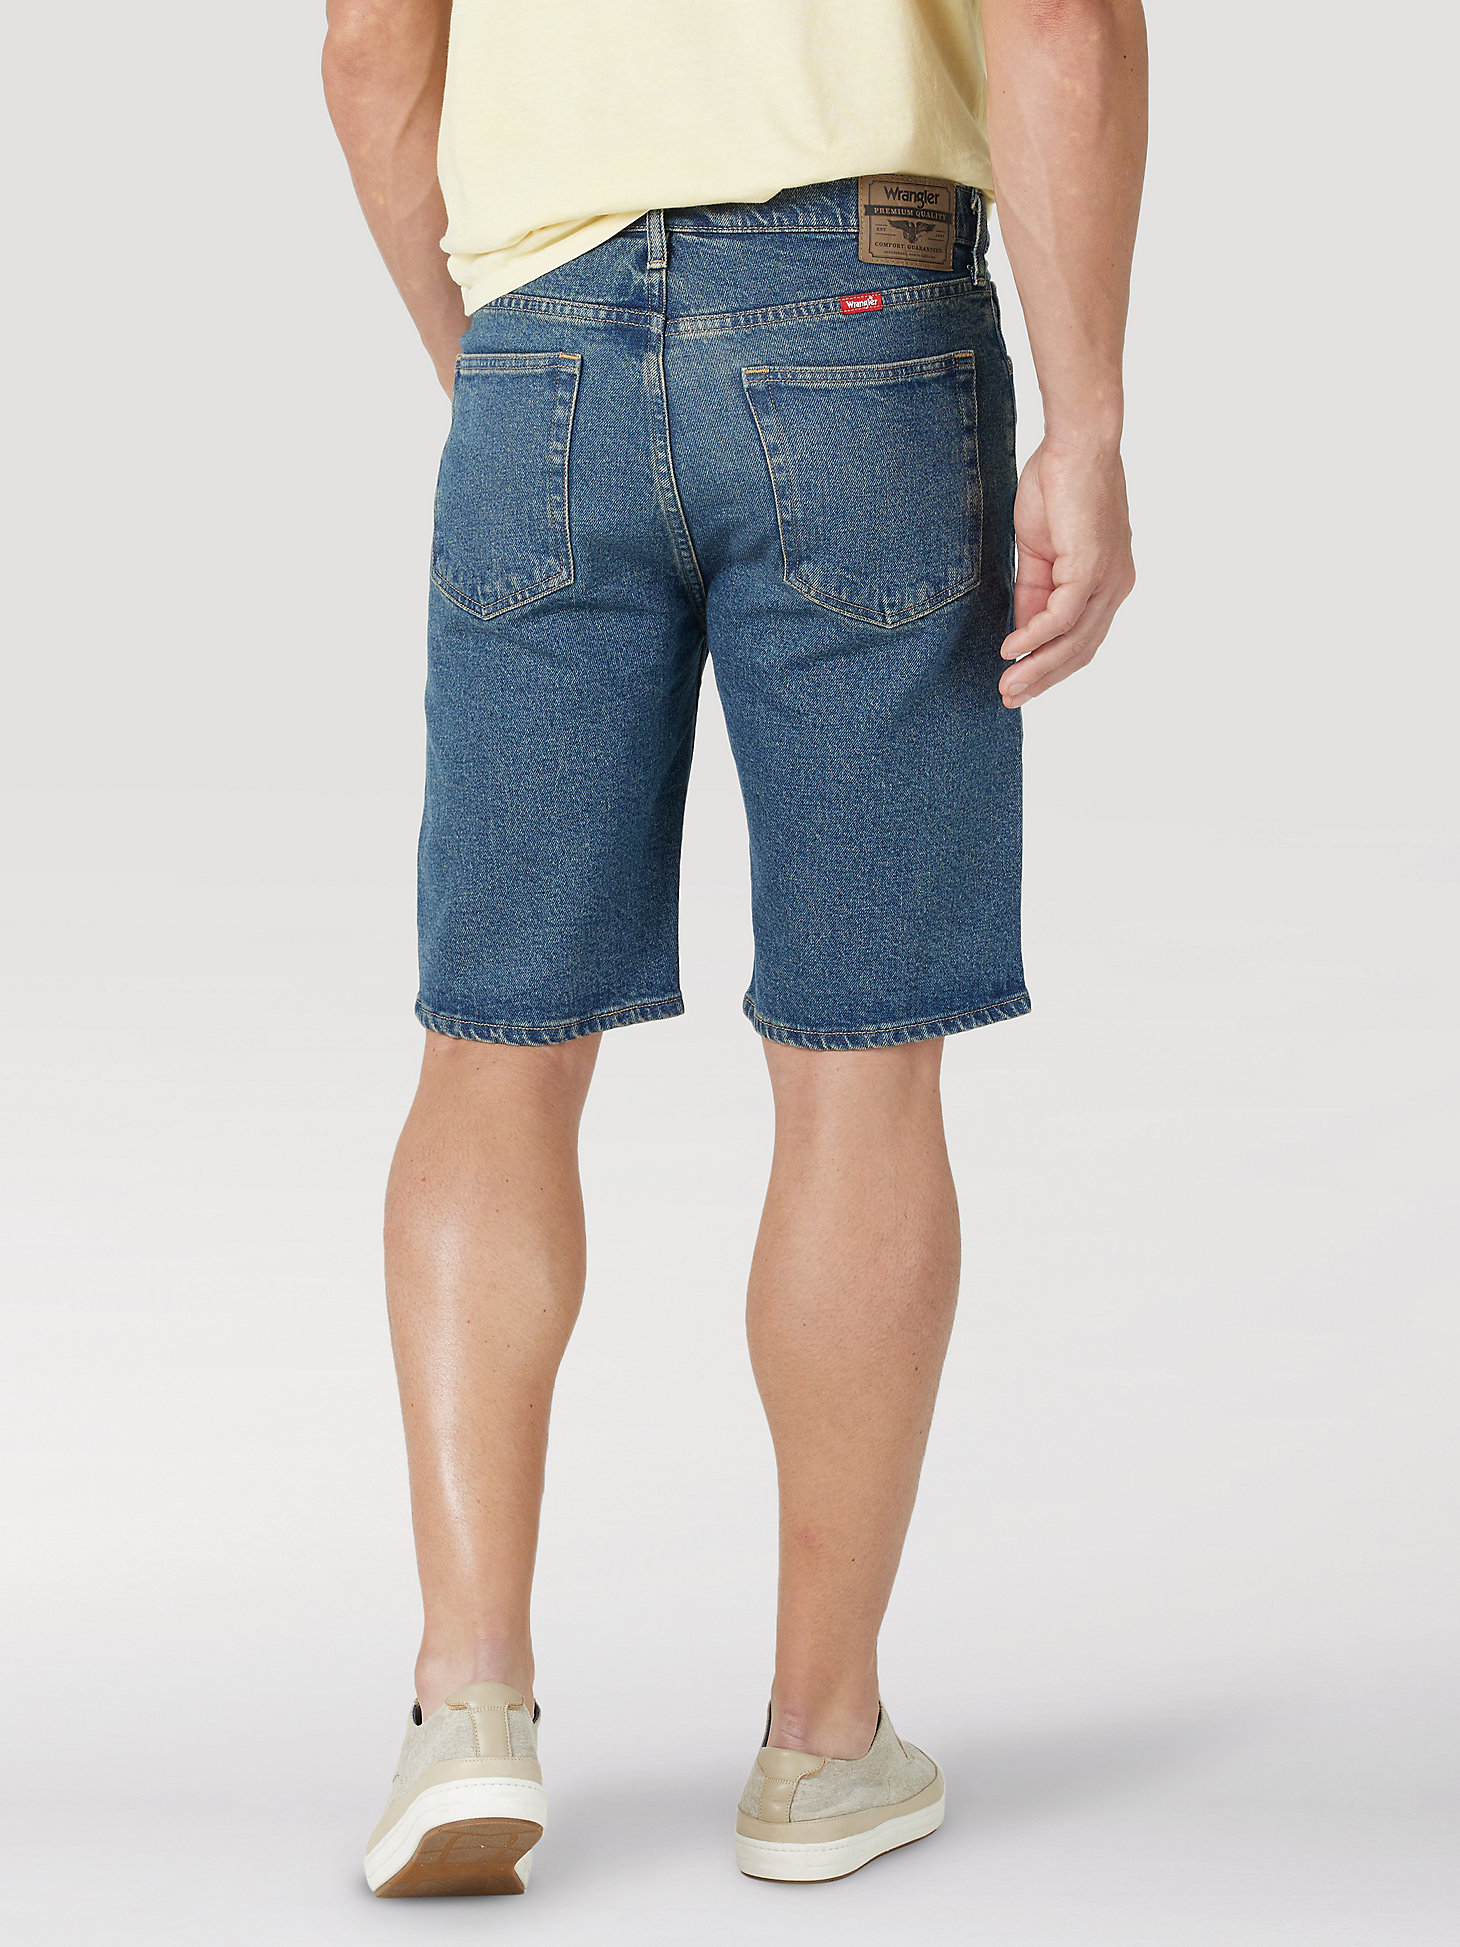 Men's Wrangler® Five Star Premium 5-pocket Relaxed Denim Short in Mid Tint alternative view 1